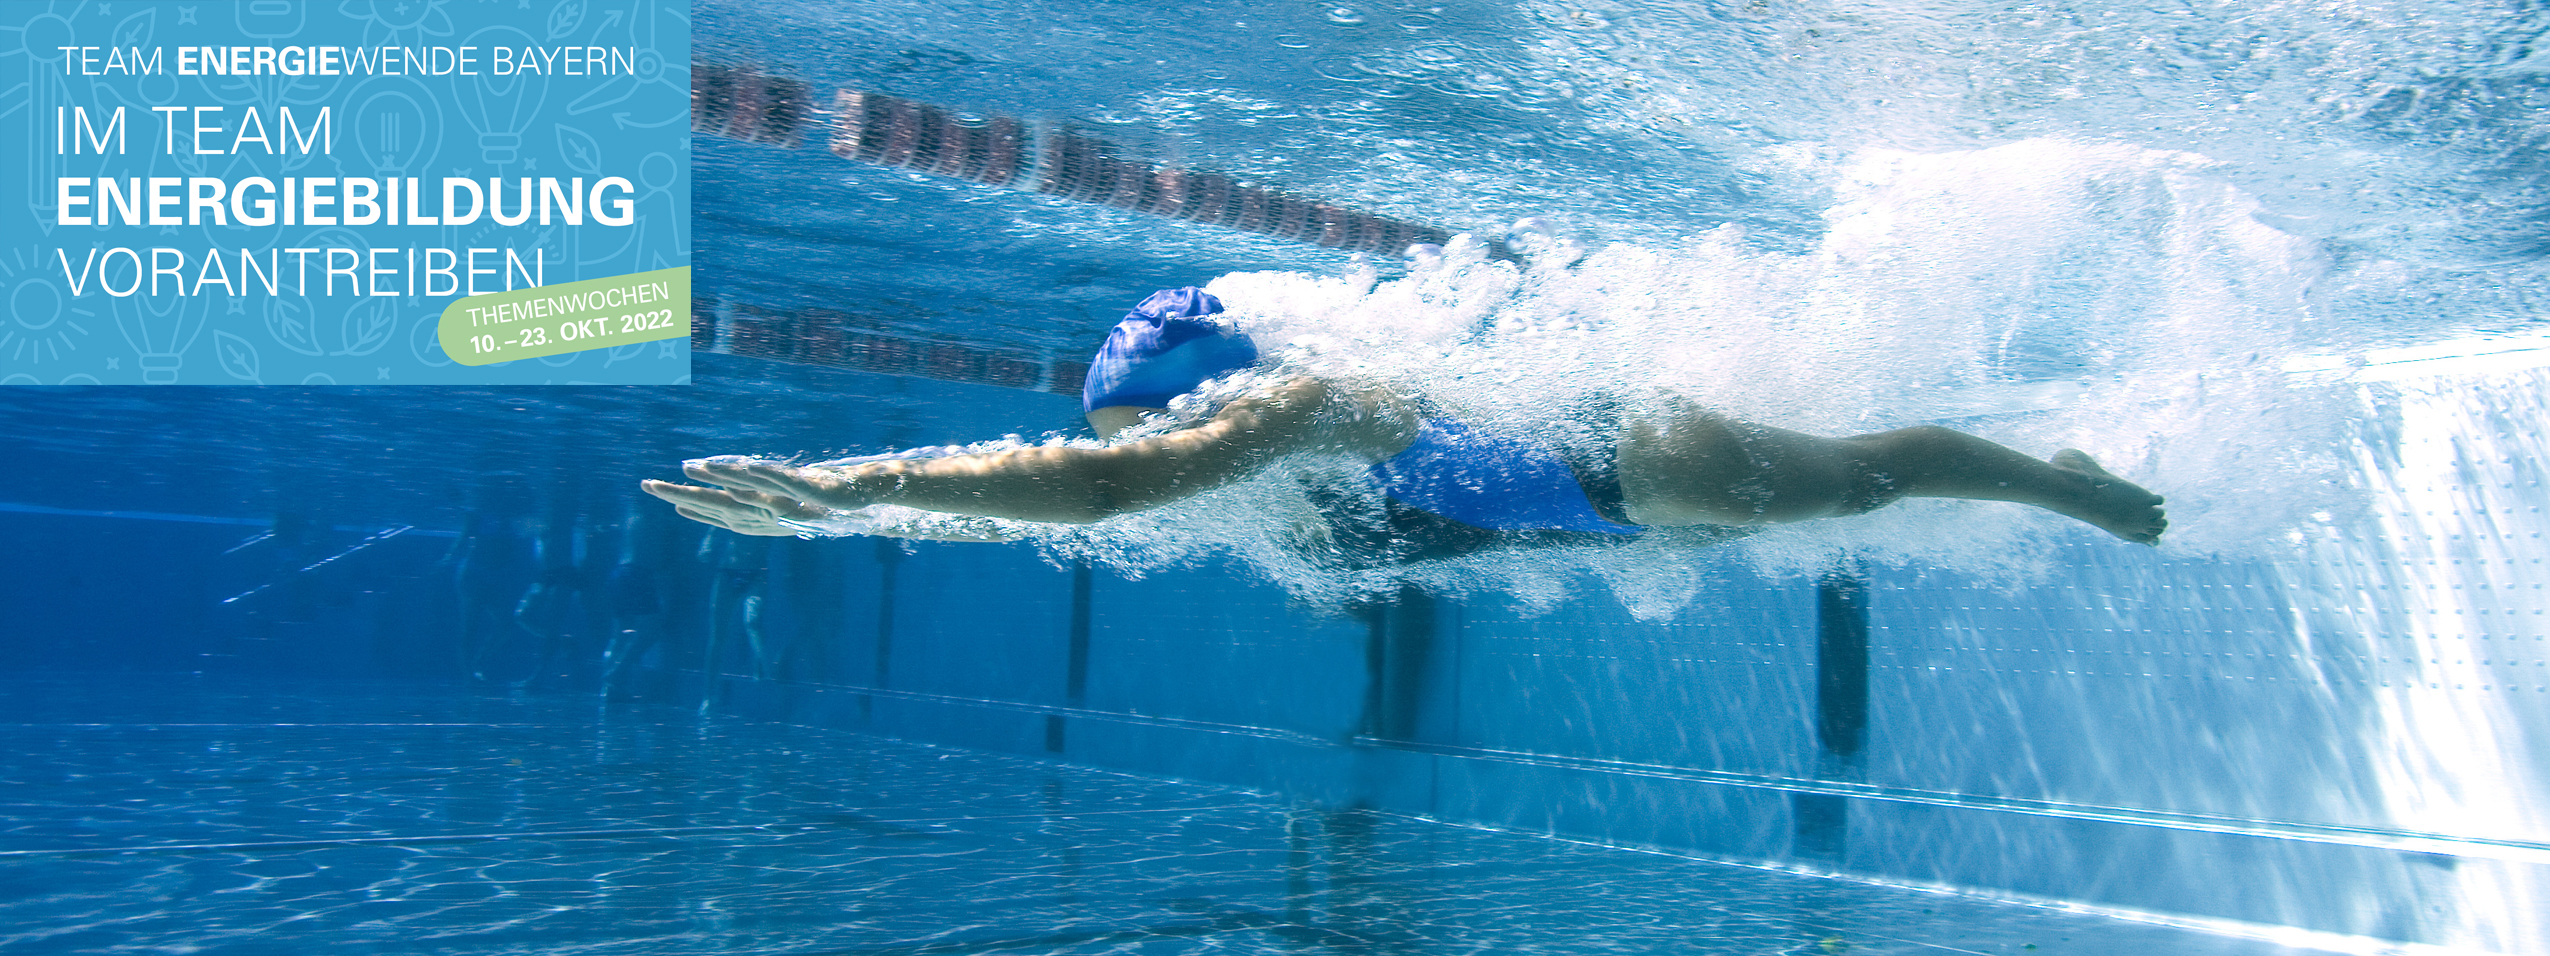 Eine Schwimmerin mit blauer Badehaube und blauem Badeanzug taucht unter Wasser in ein leeres Schwimmbecken.